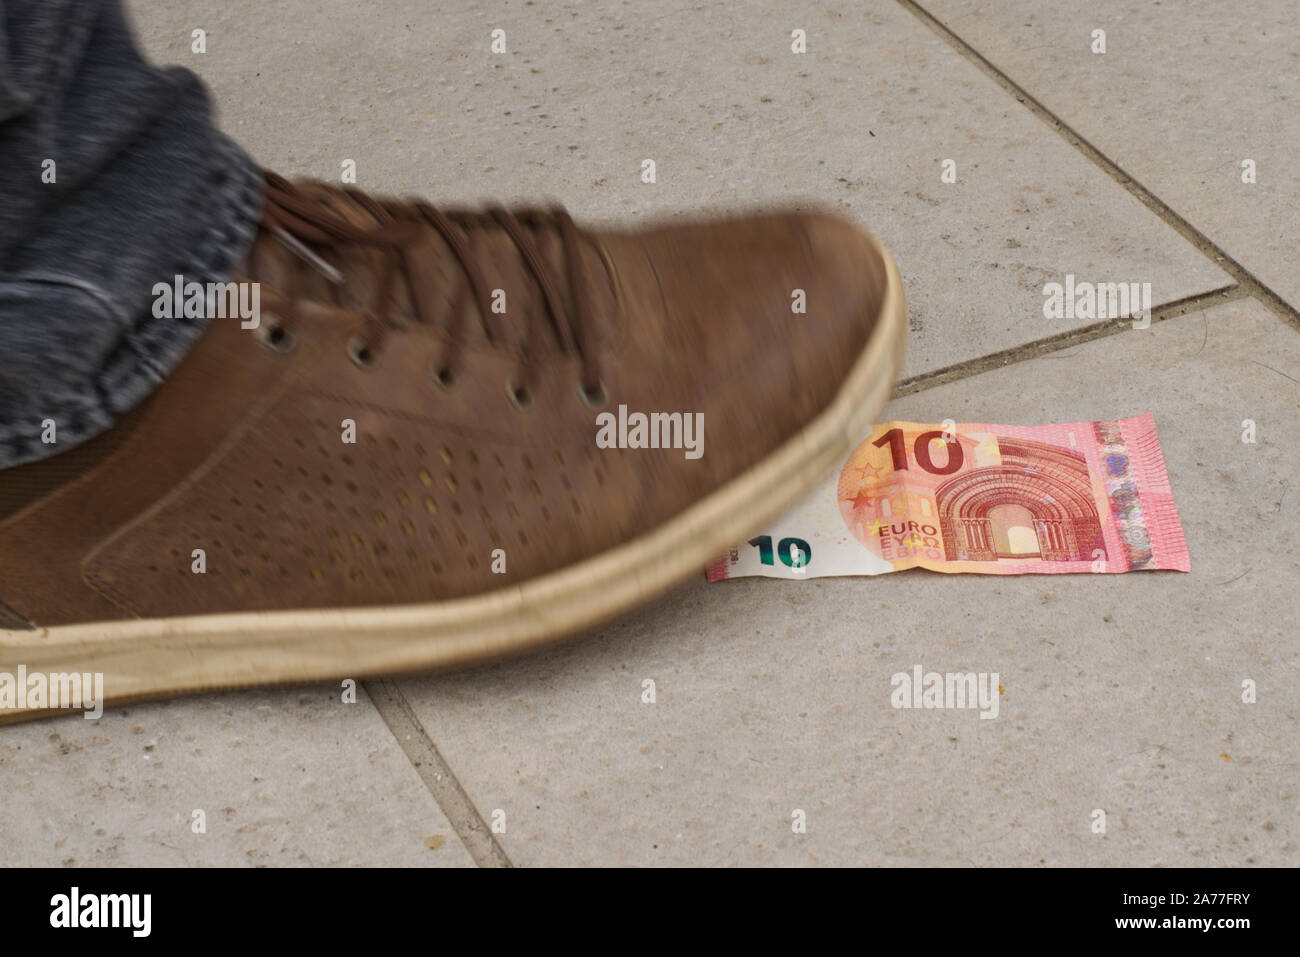 Qualcuno ha trovato 10 euro sulla strada, fissandolo con i suoi piedi. La scarpa è fuori fuoco per il movimento e la dinamica. Foto Stock